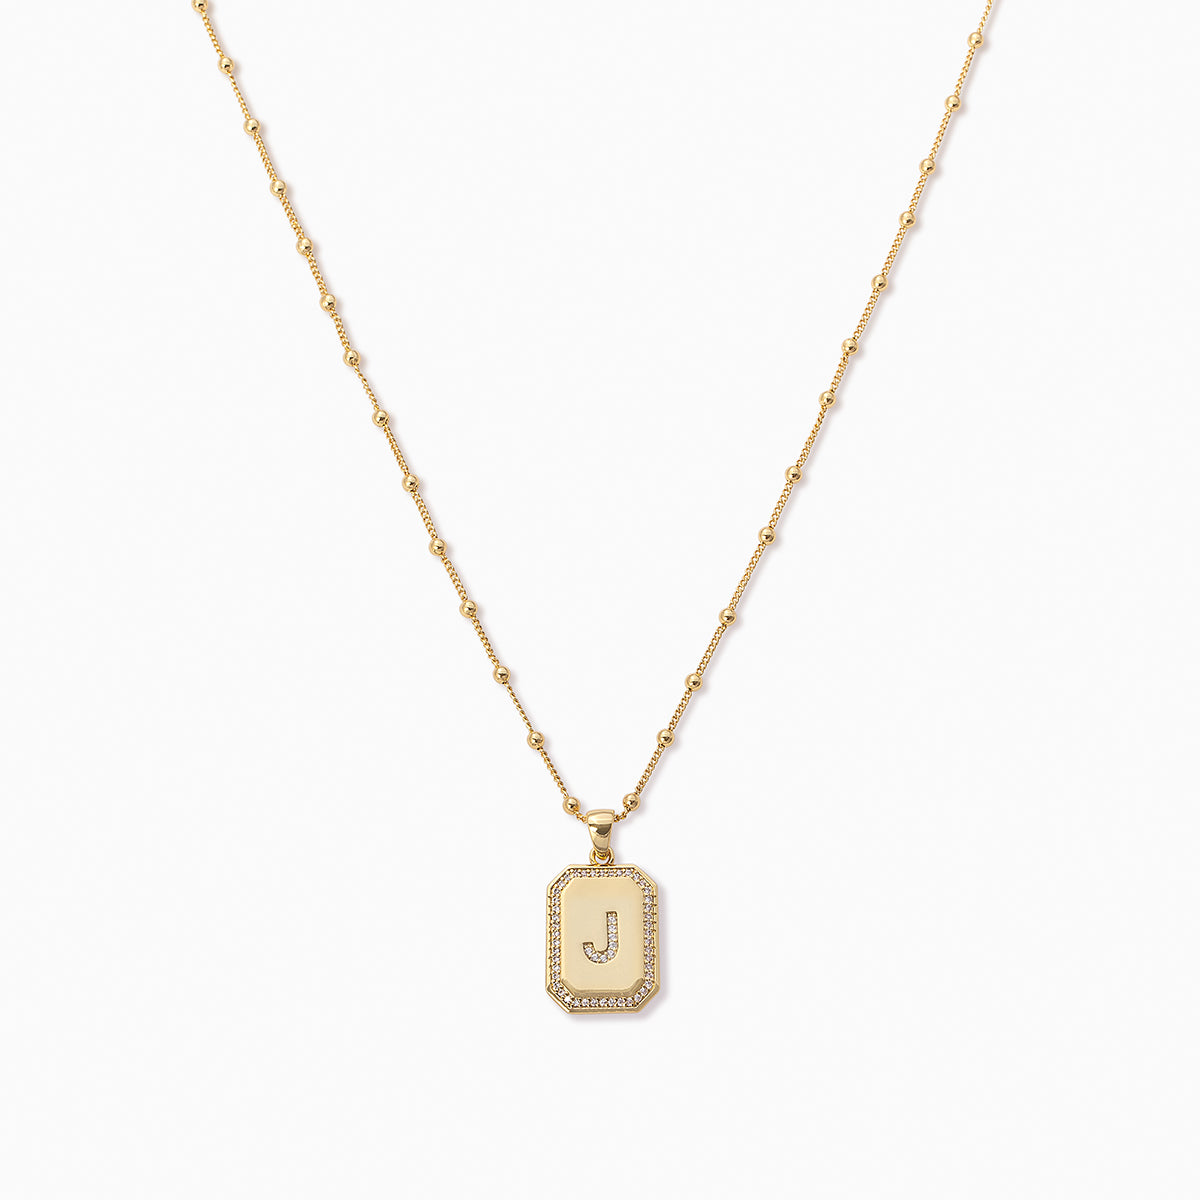 Sur 2.0 Necklace | Gold J | Product Image | Uncommon James